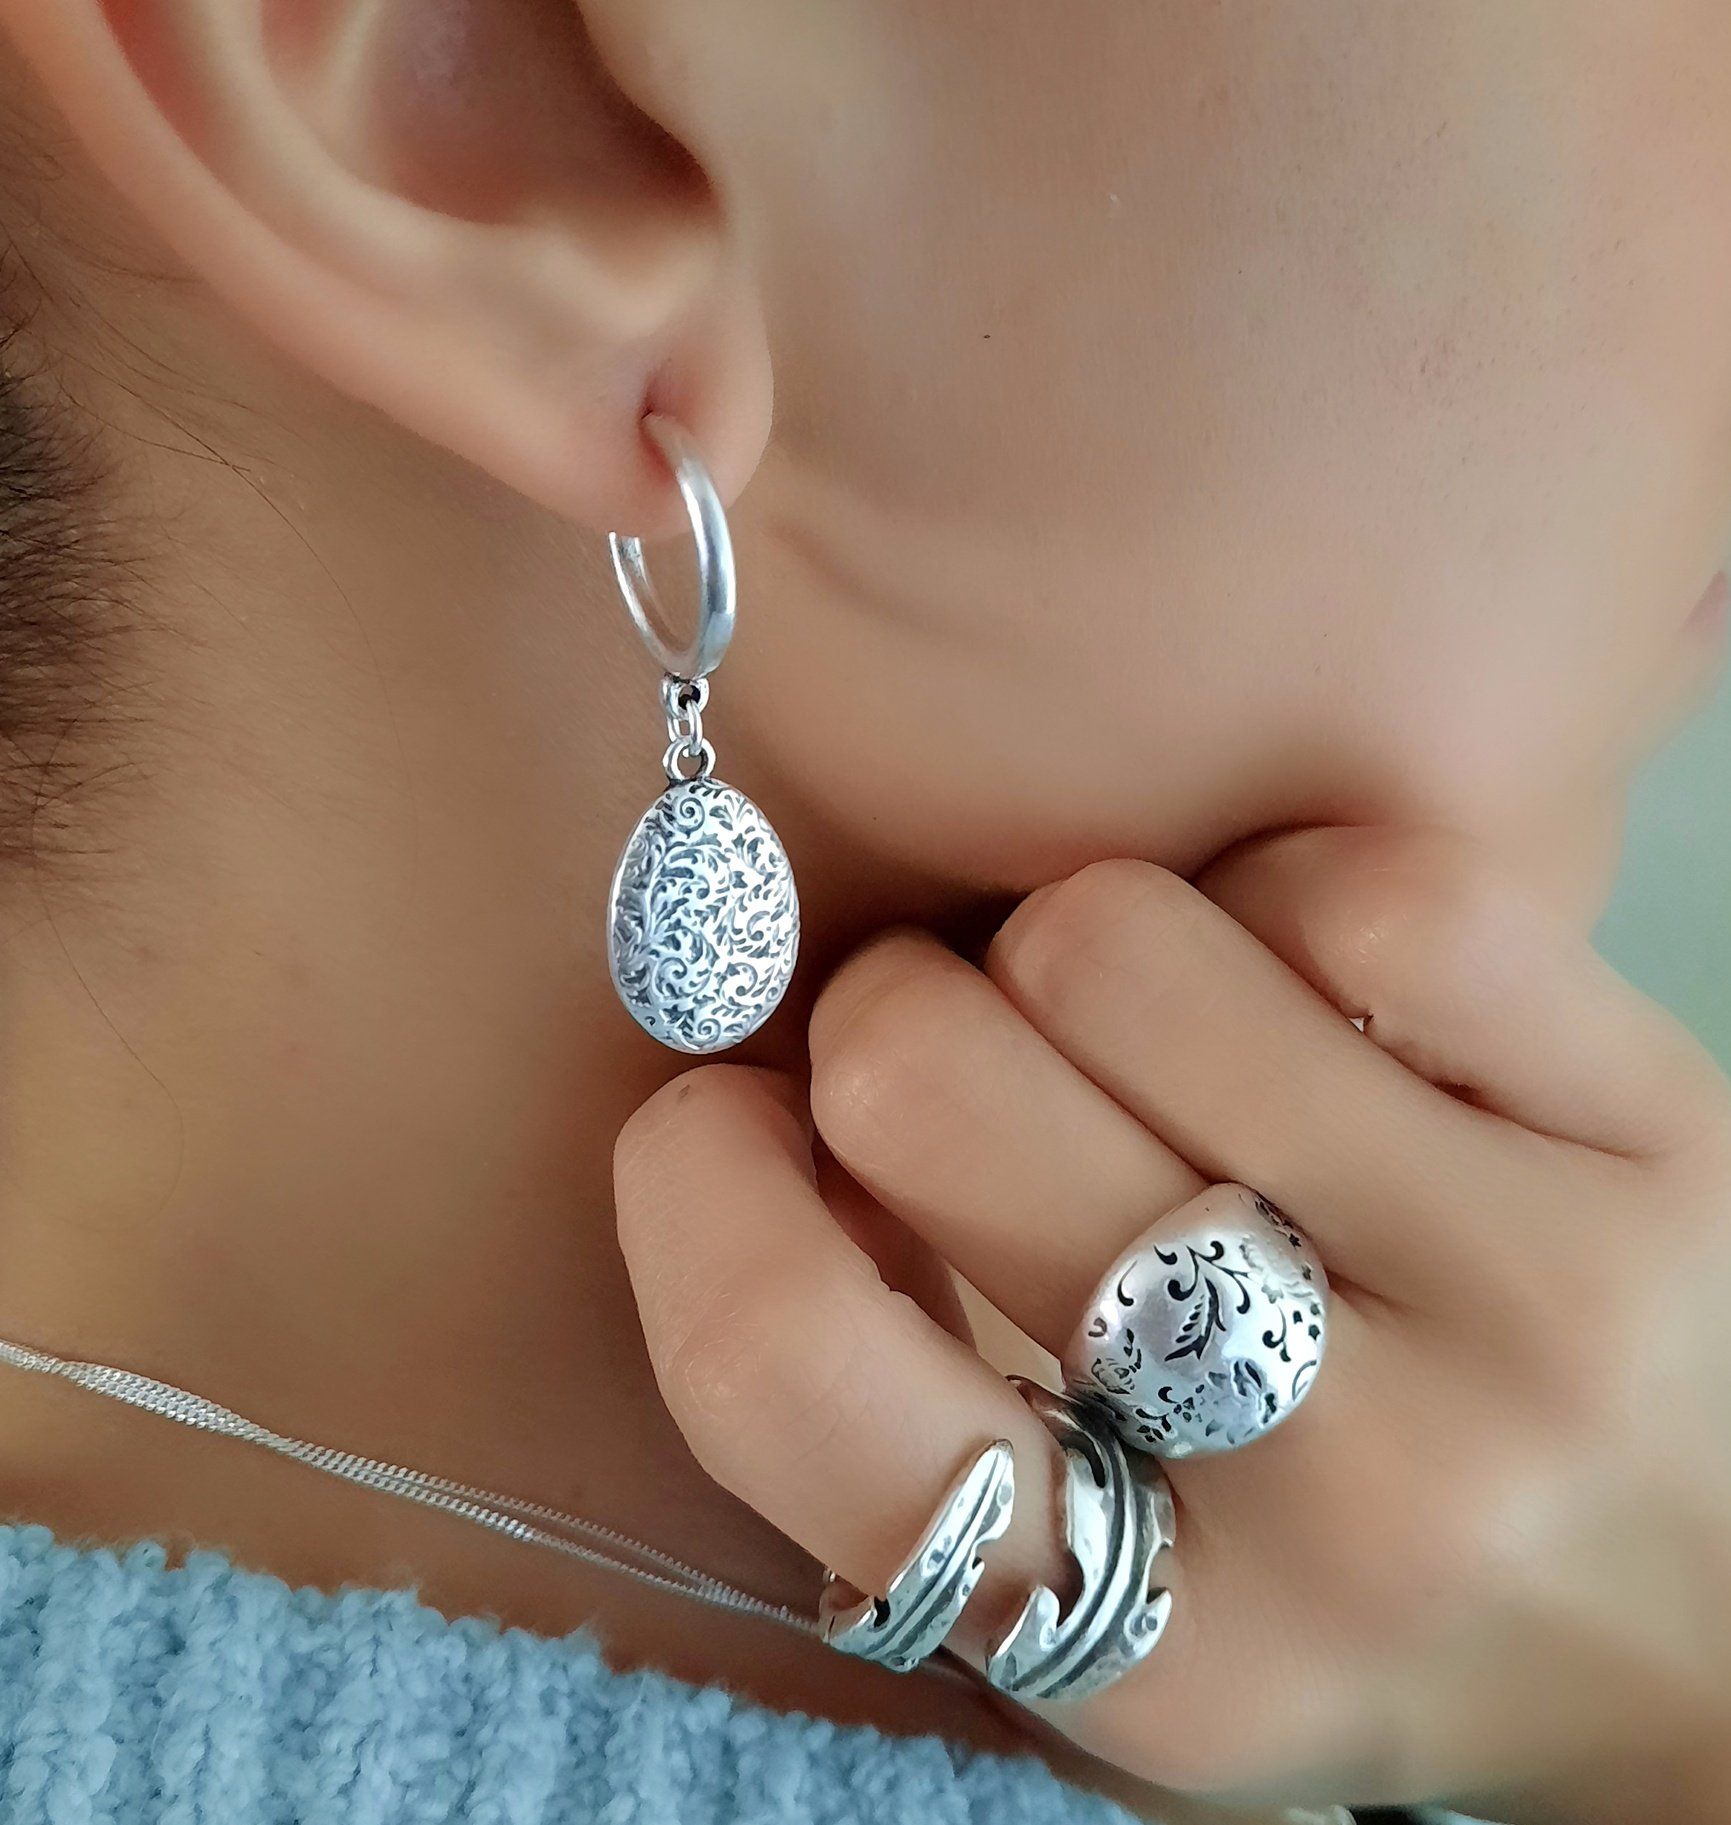 Silber Ohrringe mit Blumenmuster - Floral Ohrringe KOOMPLIMENTS SET Ohrringe + Ring